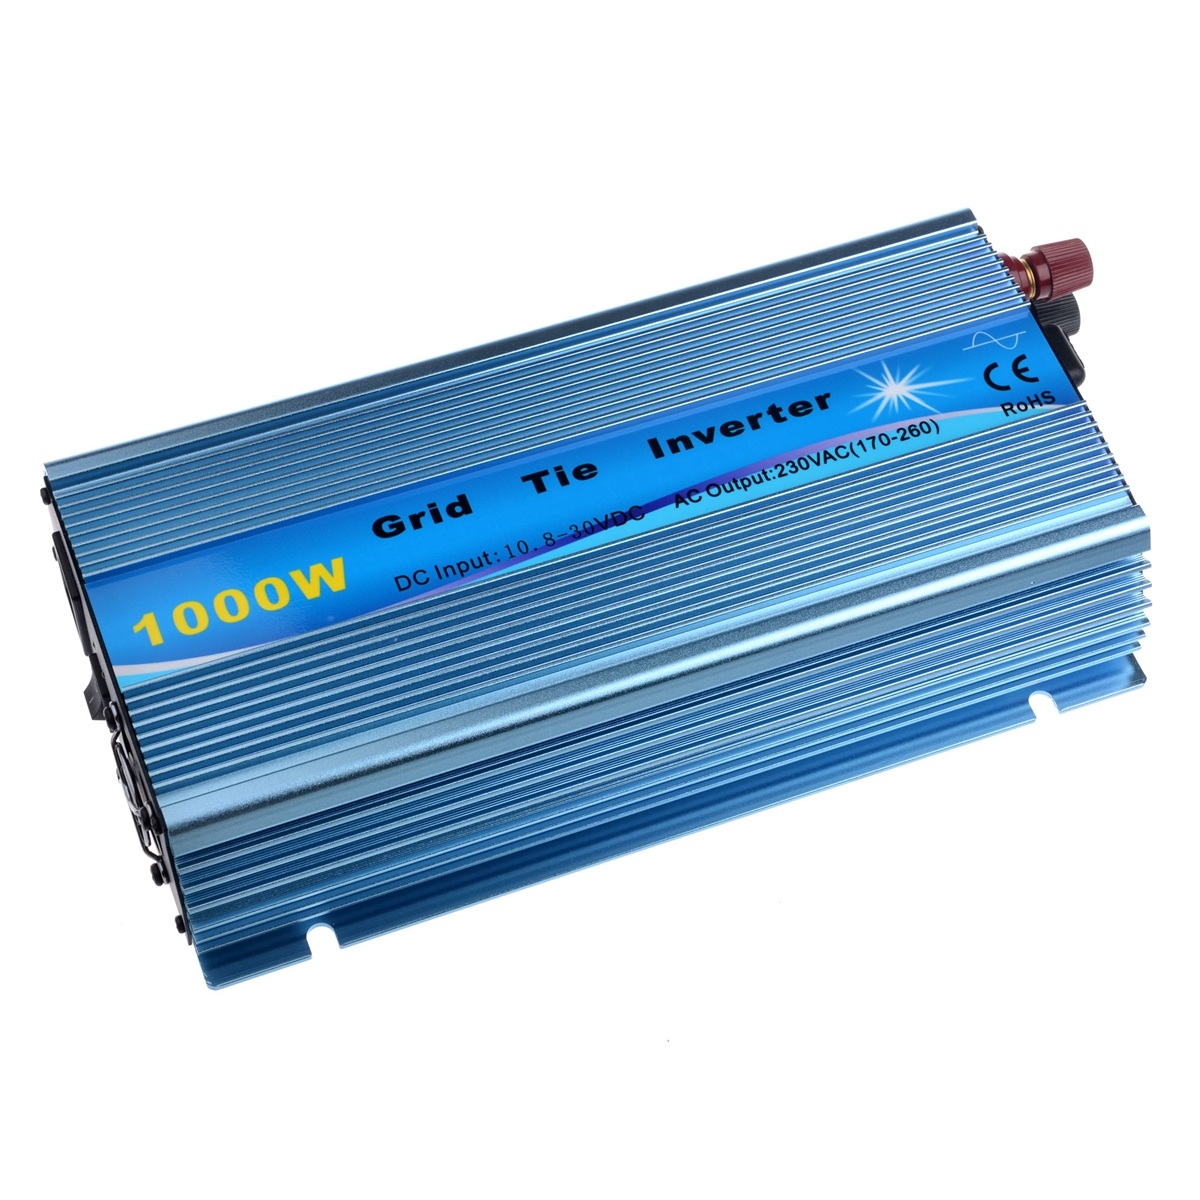 1000W-Solar-Grid-Tie-Inverter-DC18V--DC2436V-to-AC110V220V-MPPT-Pure-Sine-Wave-Inverter-50Hz60Hz-1454241-1